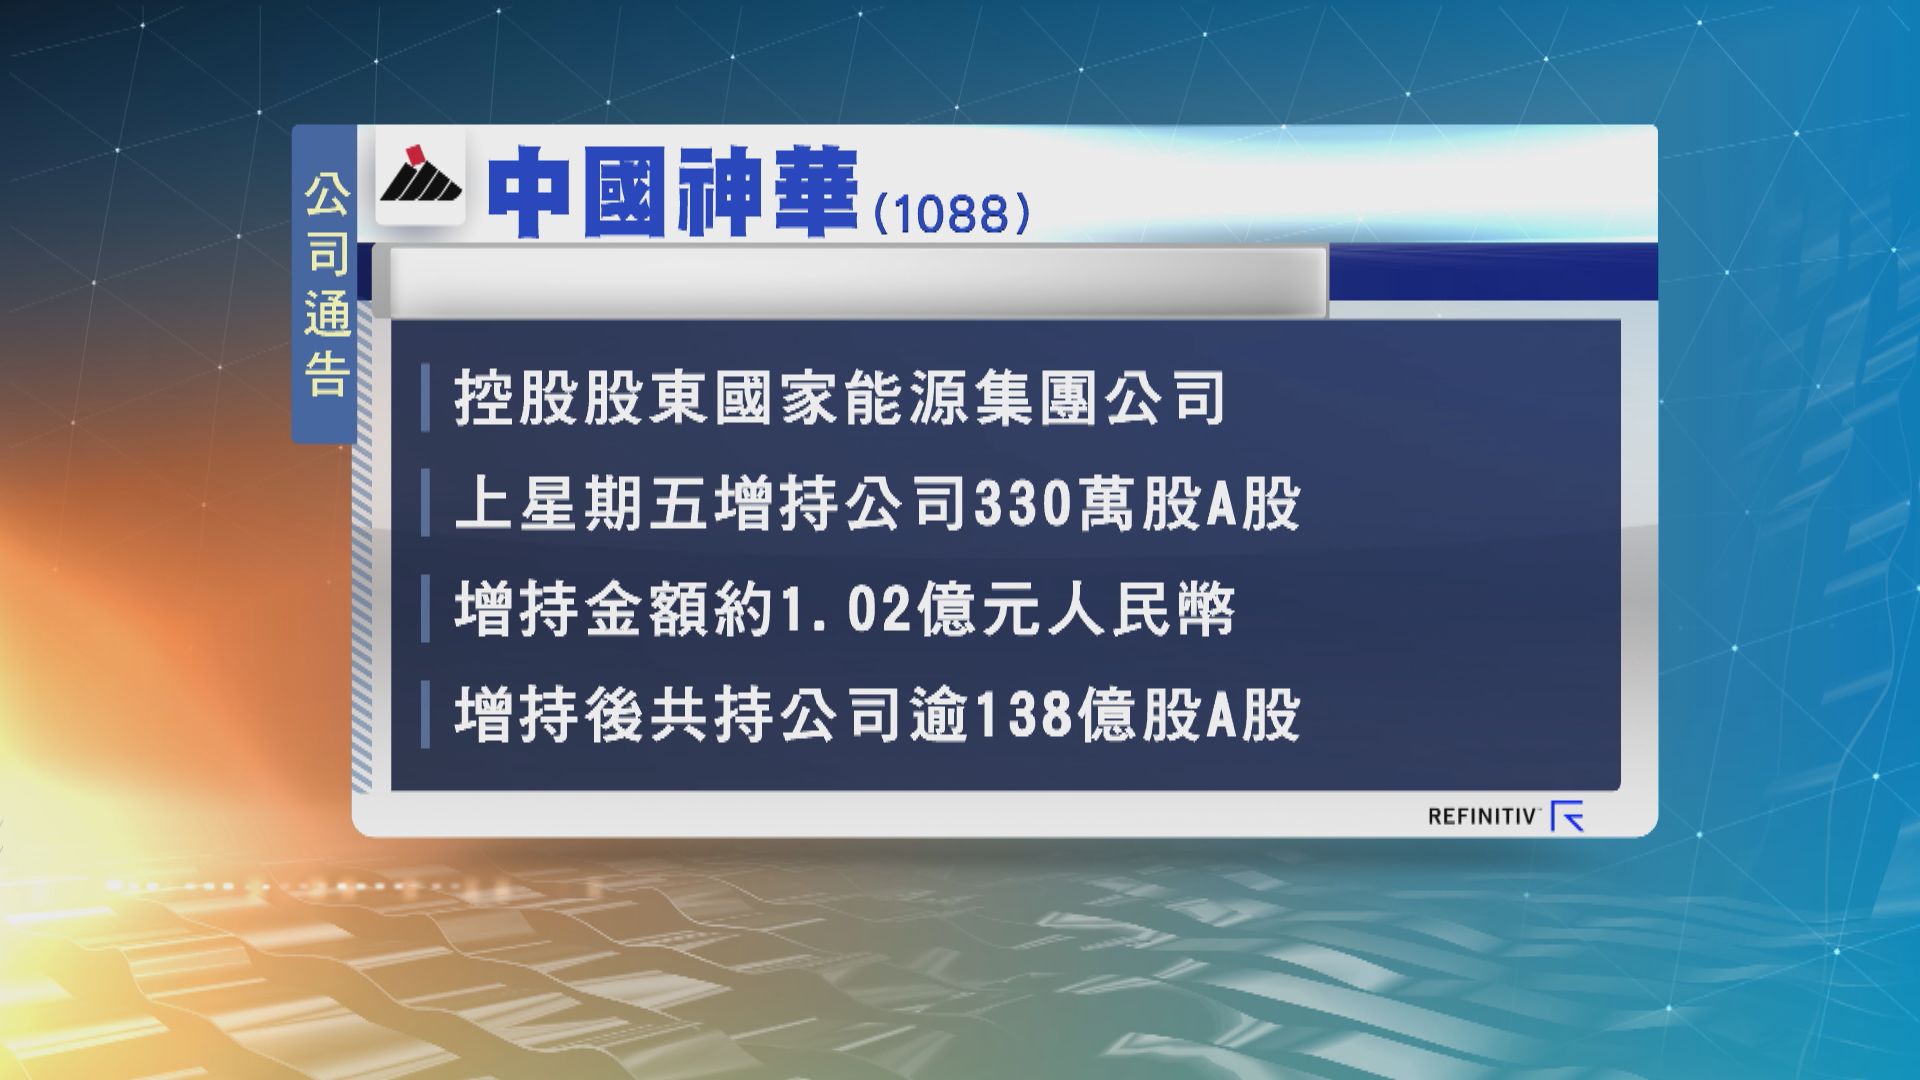 中國神華獲控股股東增持 涉資約1億元人民幣